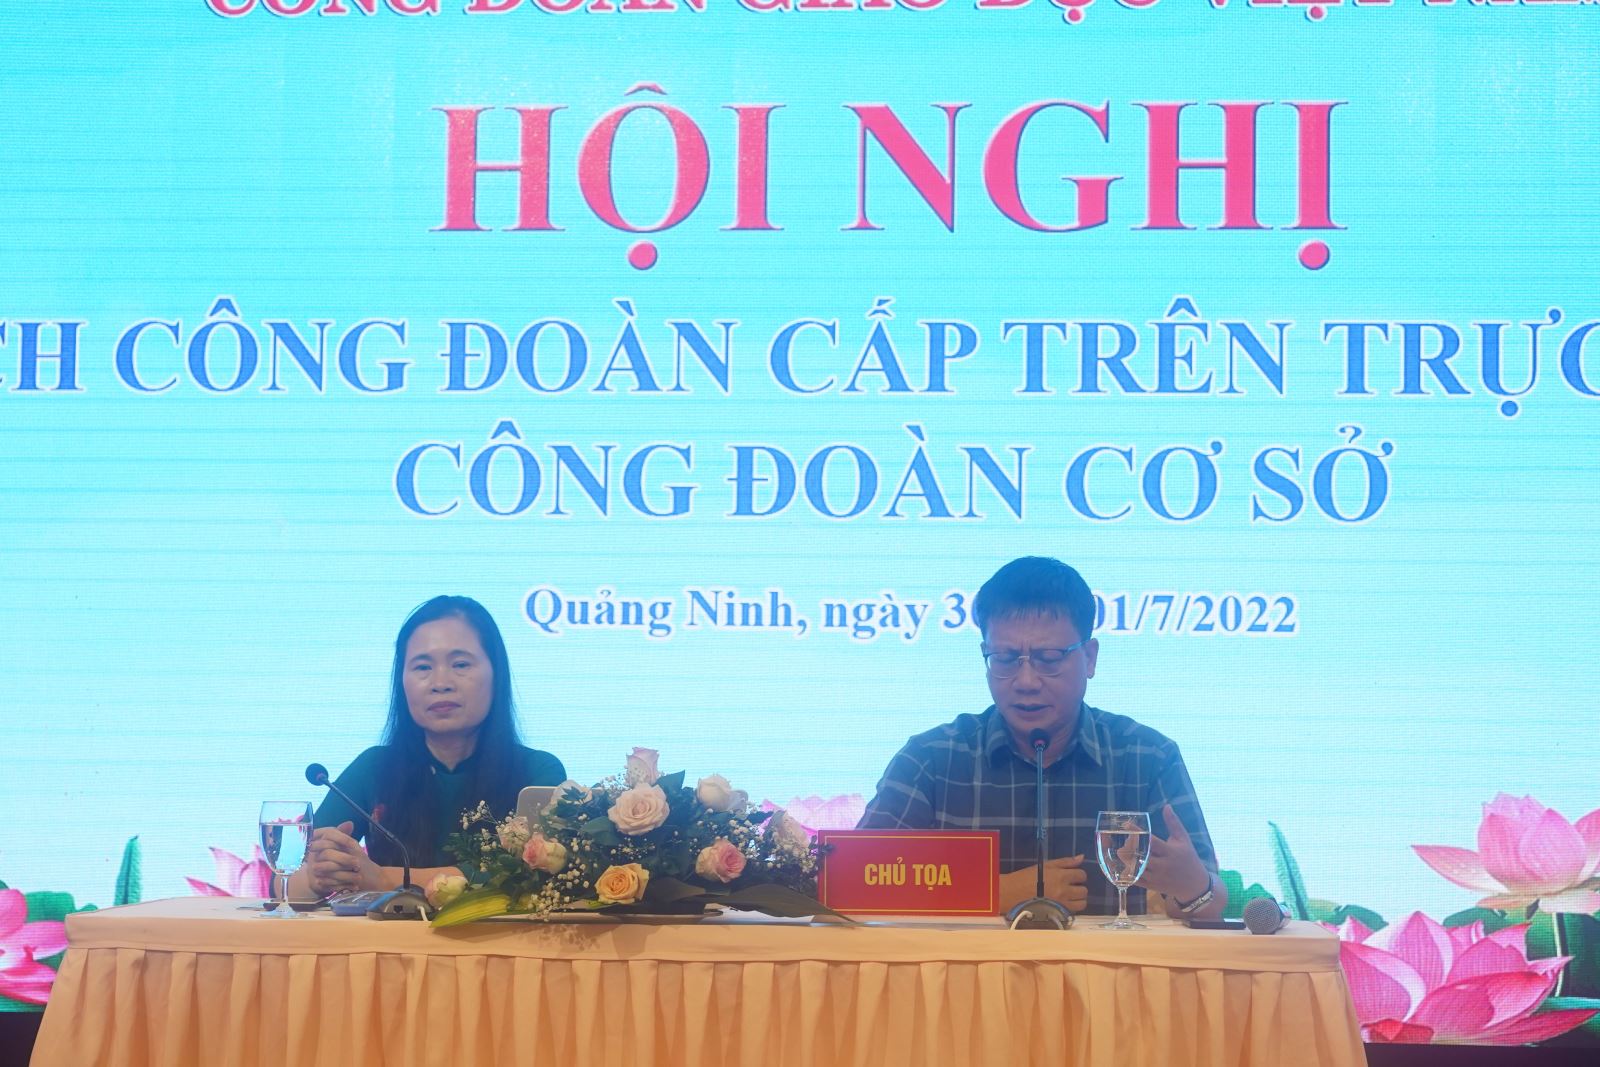 Công đoàn Giáo dục Việt Nam tổ chức Hội nghị Chủ tịch Công đoàn cấp trên trực tiếp cơ sở và công đoàn cơ sở khối trực thuộc